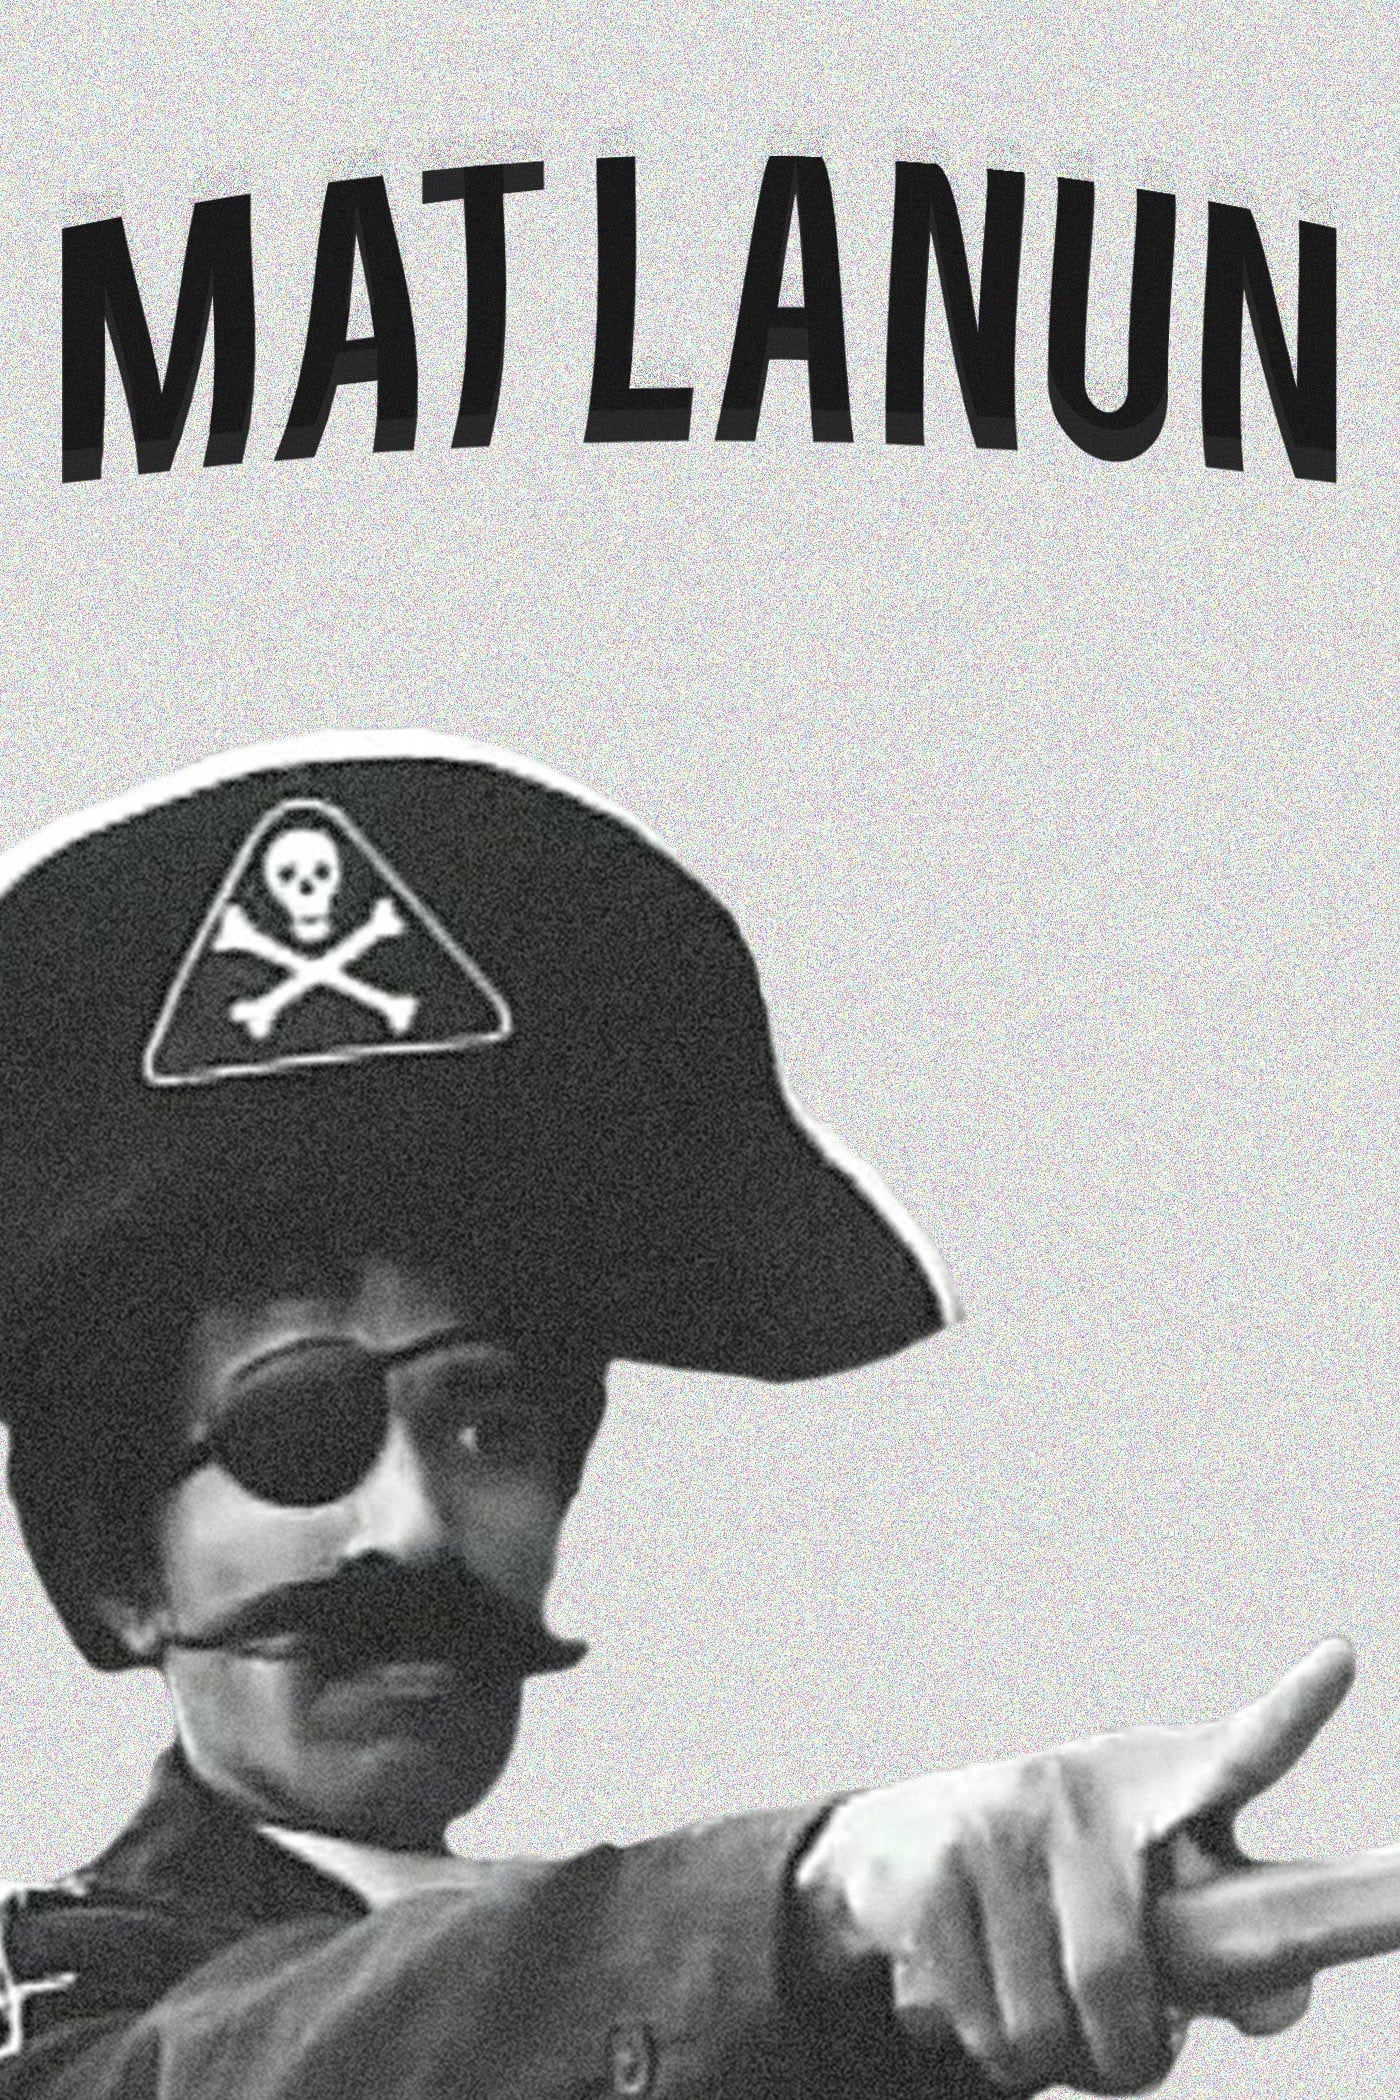 Mat Pirate